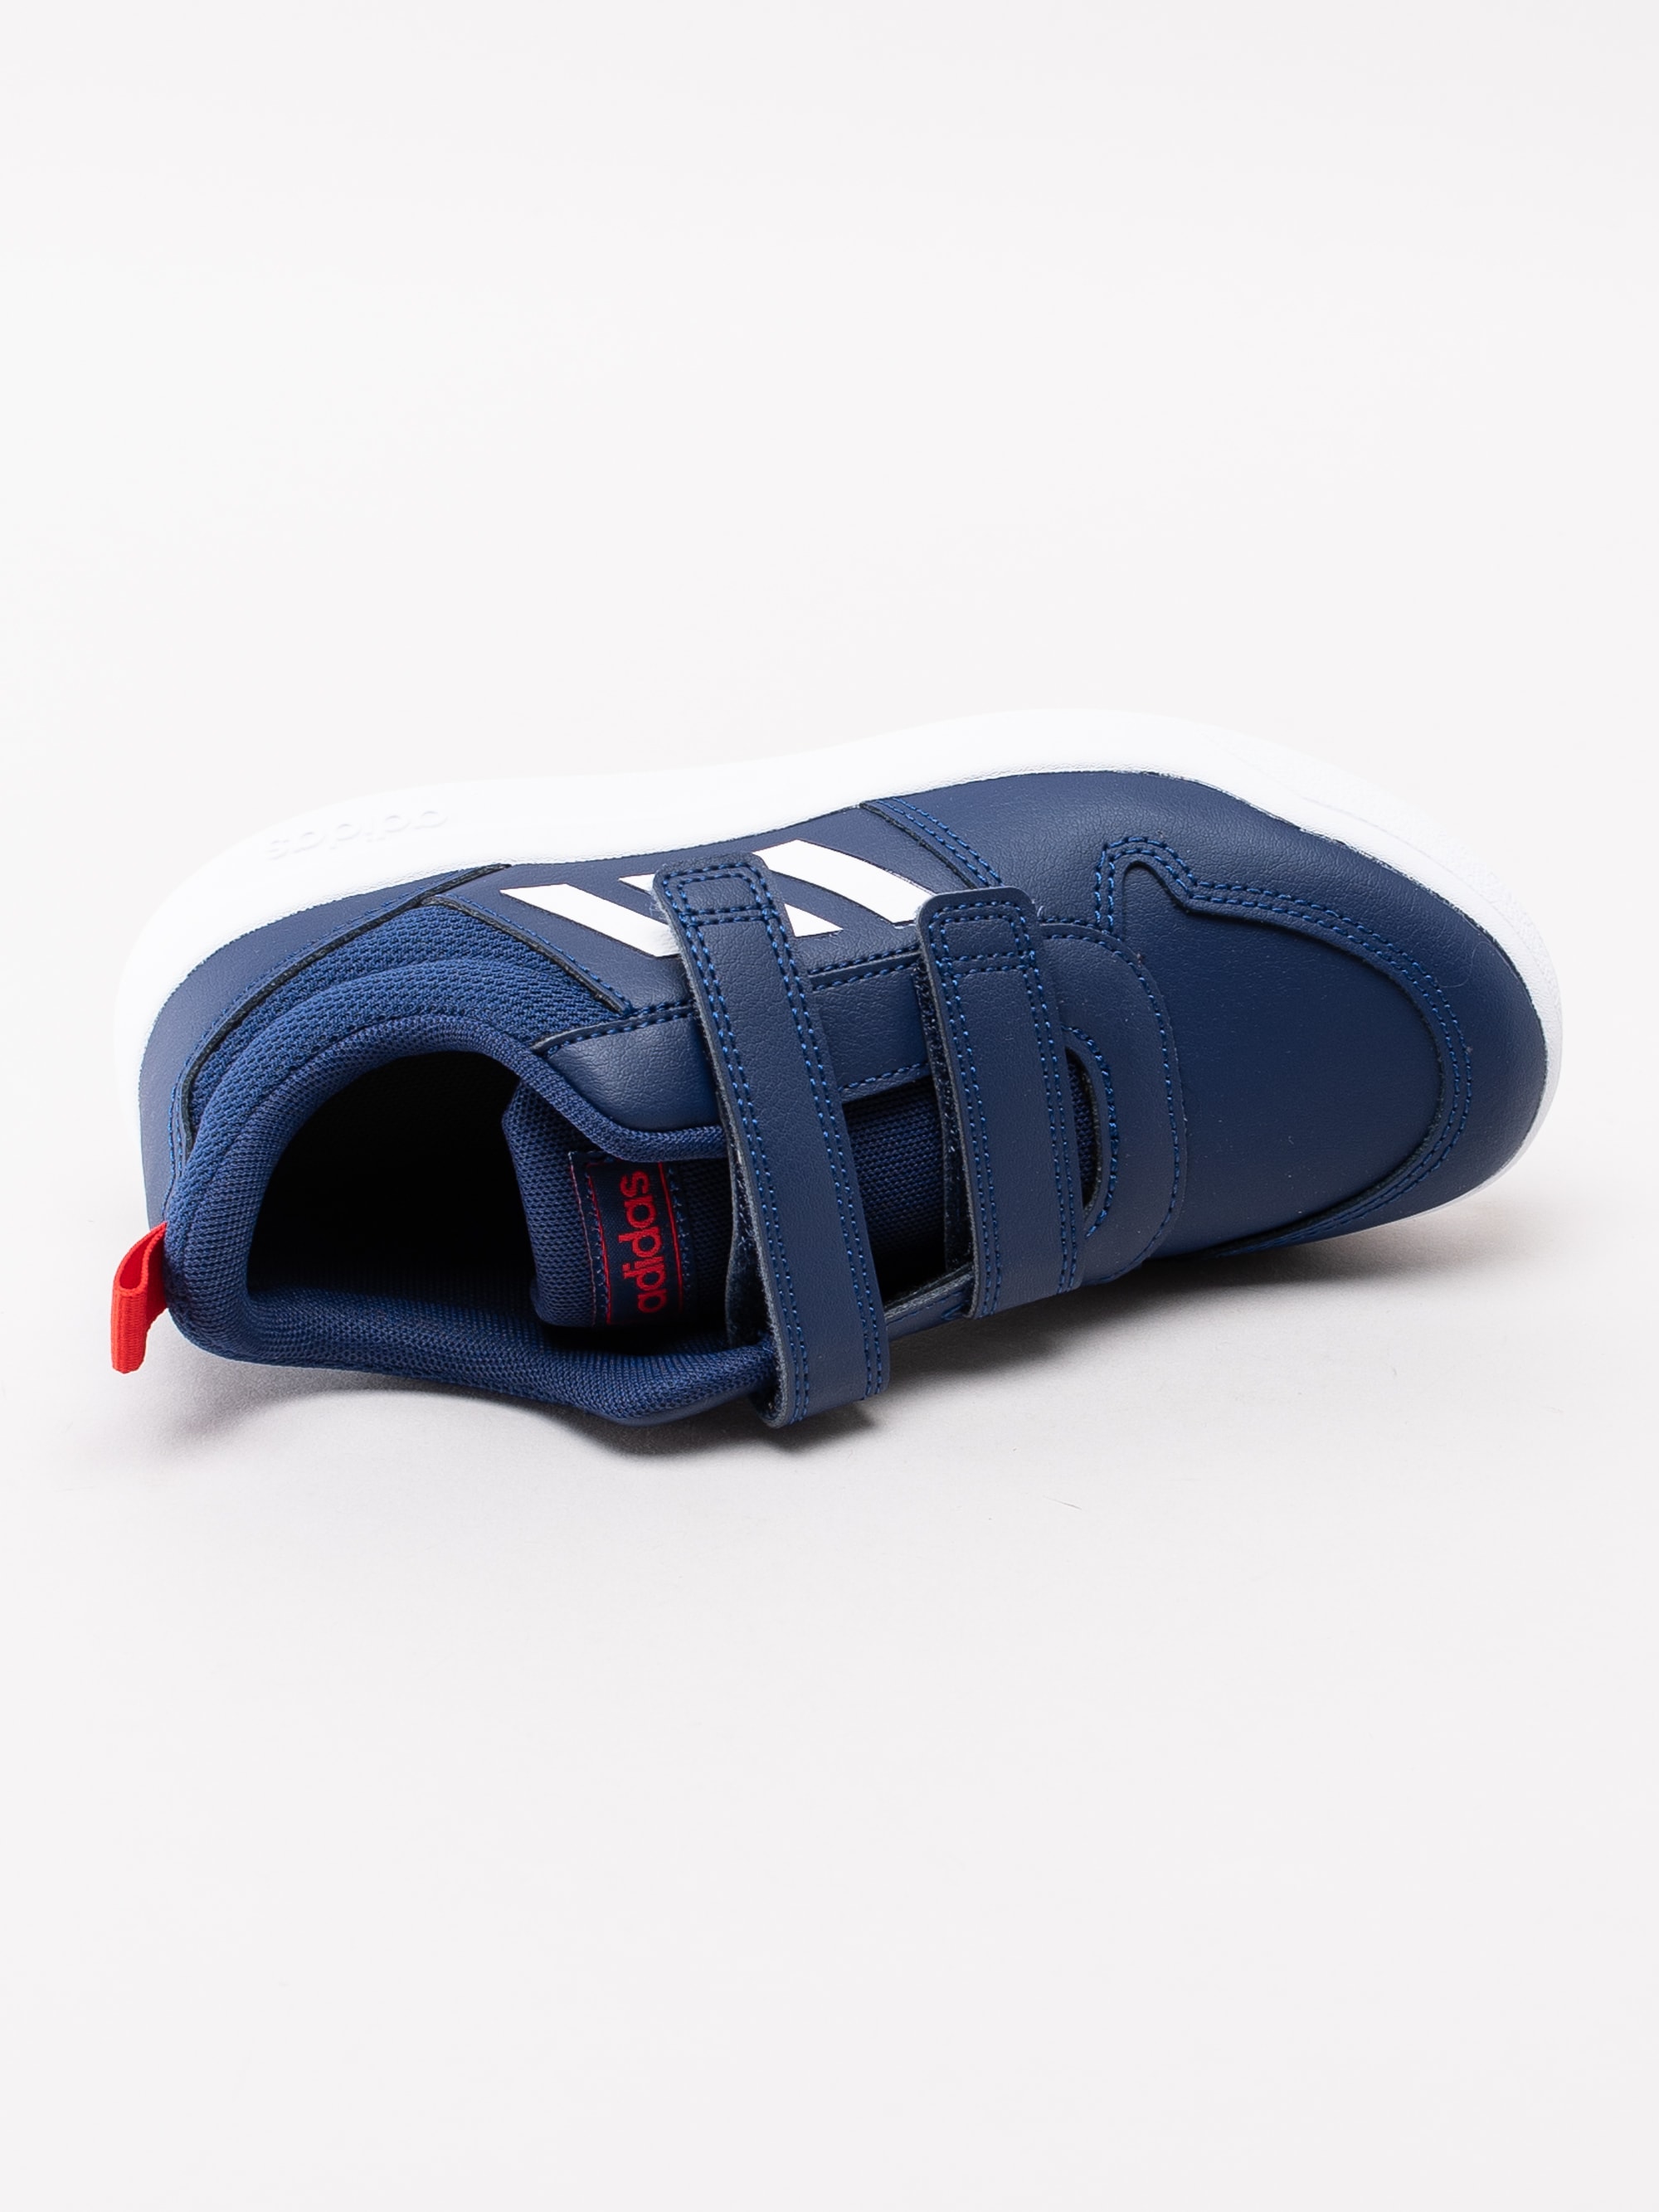 56193017 Adidas Tensaurus C EF1095 mörkblå sneakers med kardborre-4